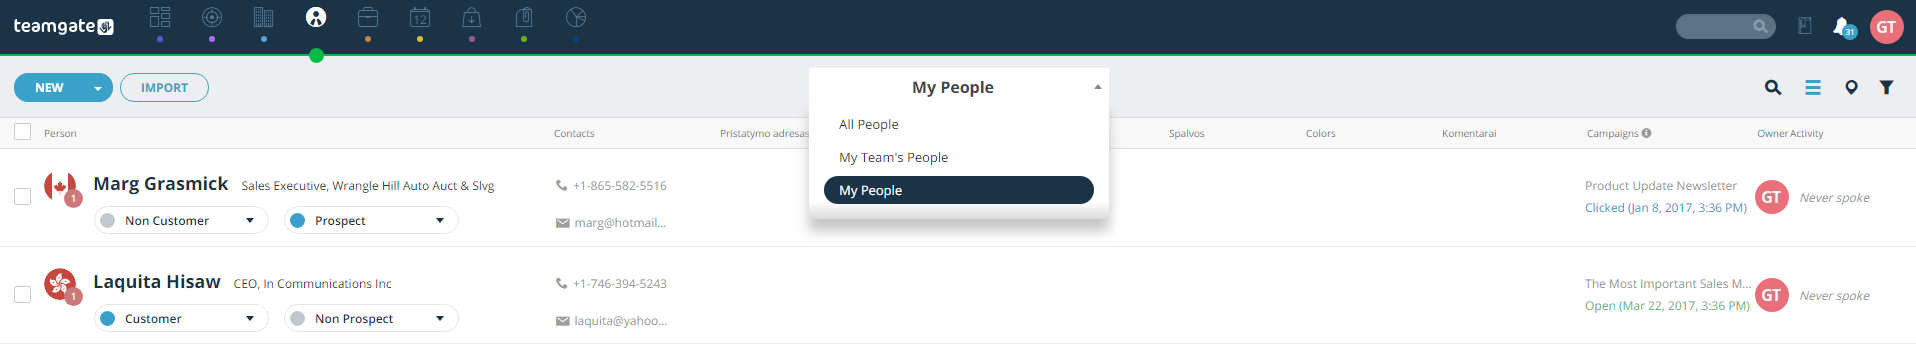 all-people-my-people-teams-people-teamgate.png